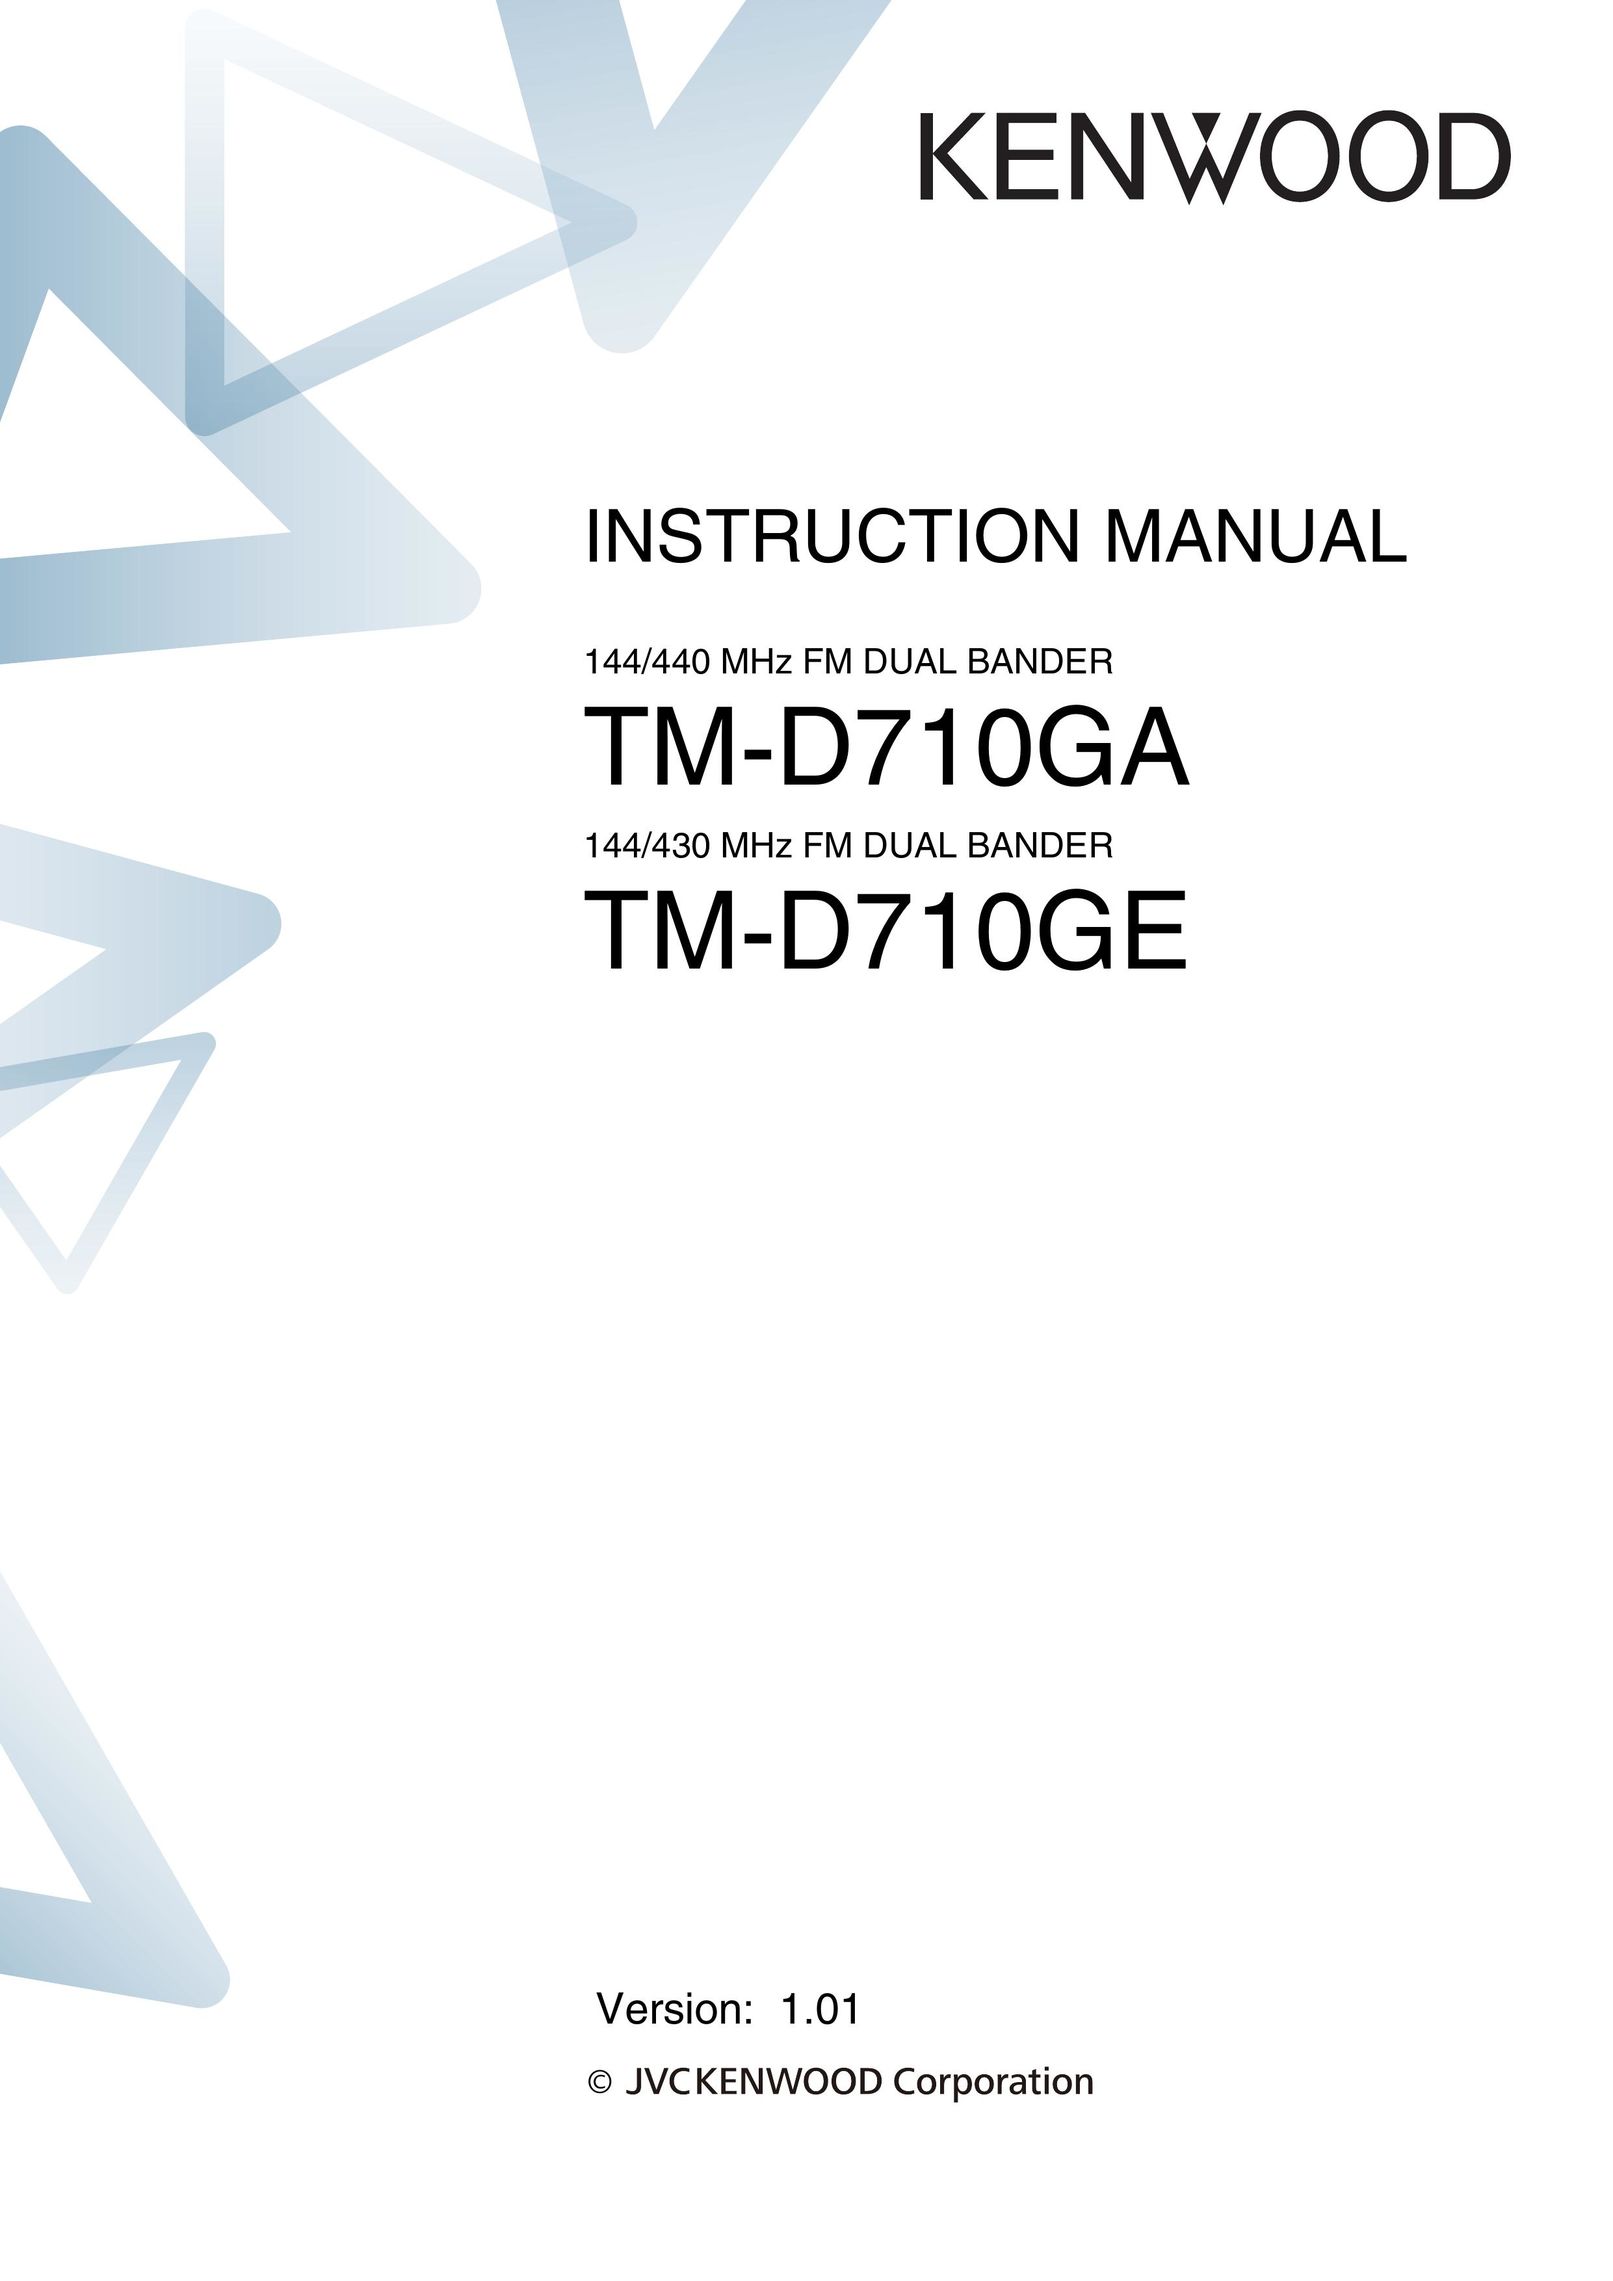 Kenwood TM-D710GA Radio User Manual